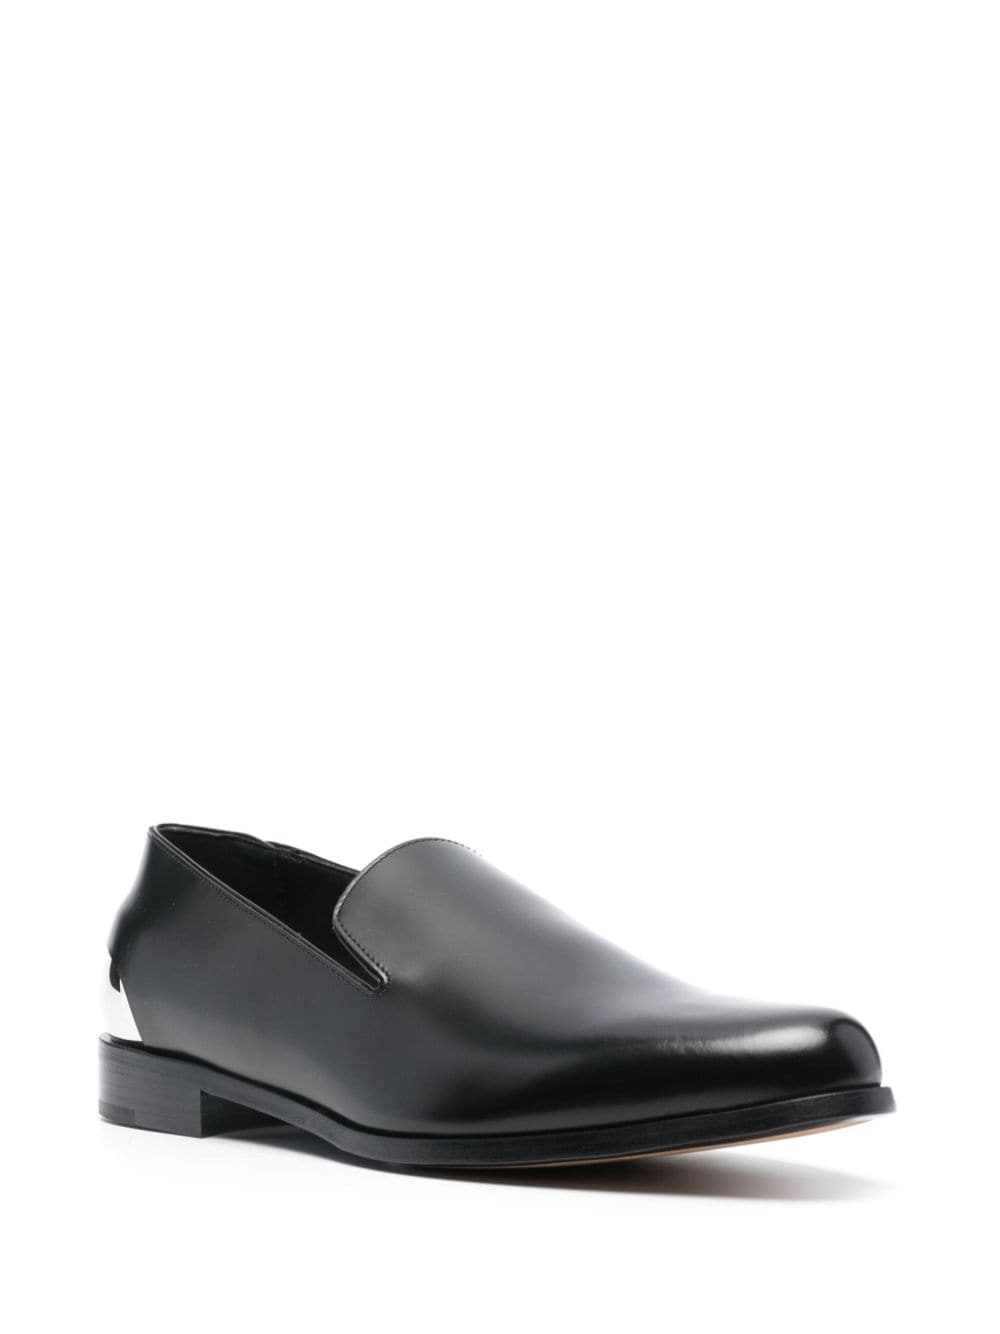 Image 2 of Alexander McQueen metal-heel leather loafers